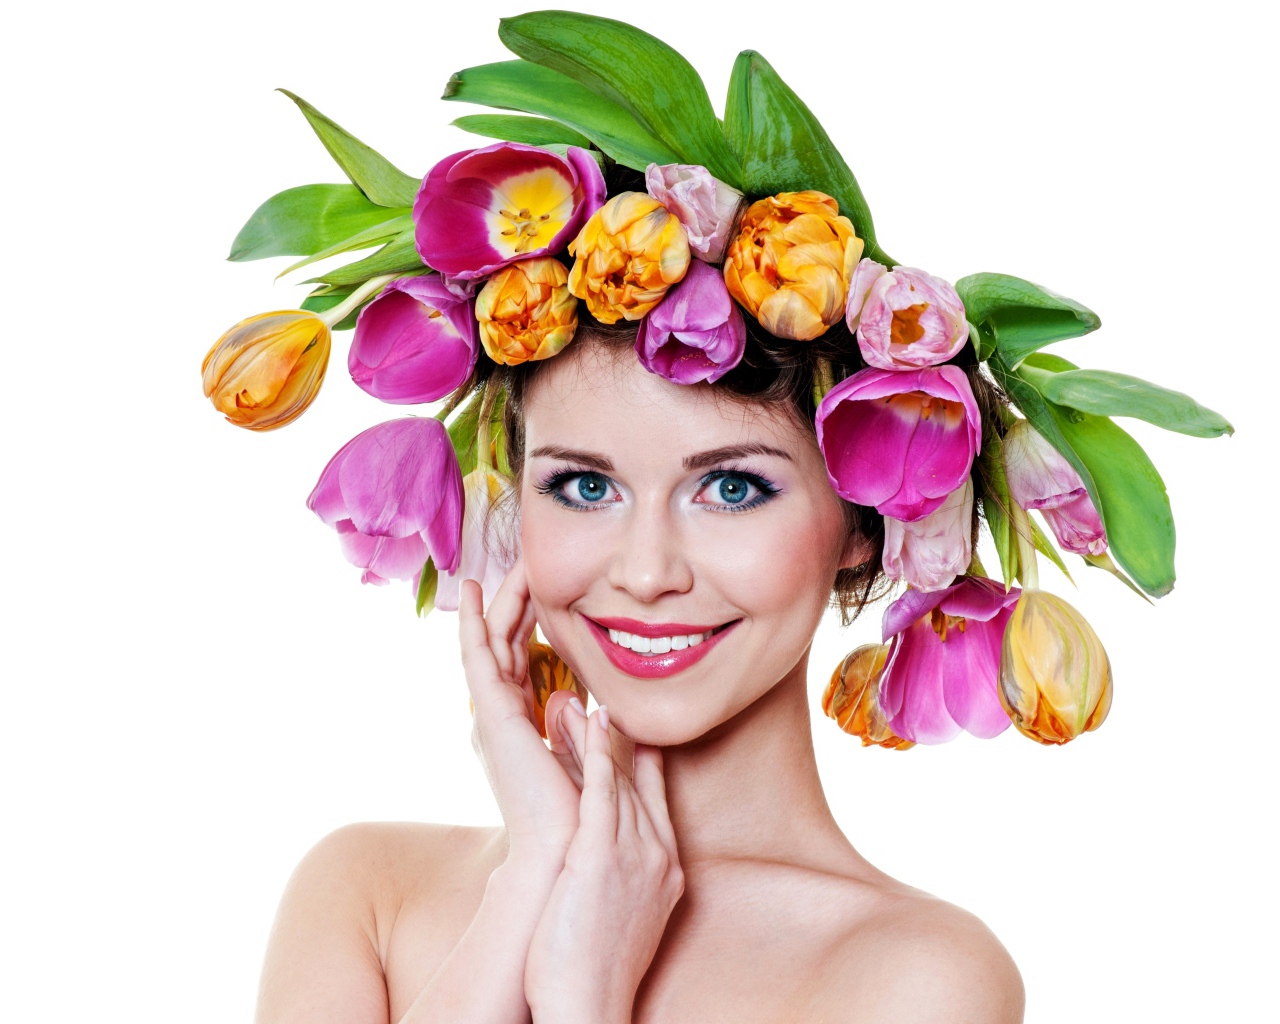 Голубоглазая улыбающаяся девушка с венком из тюльпанов на голове